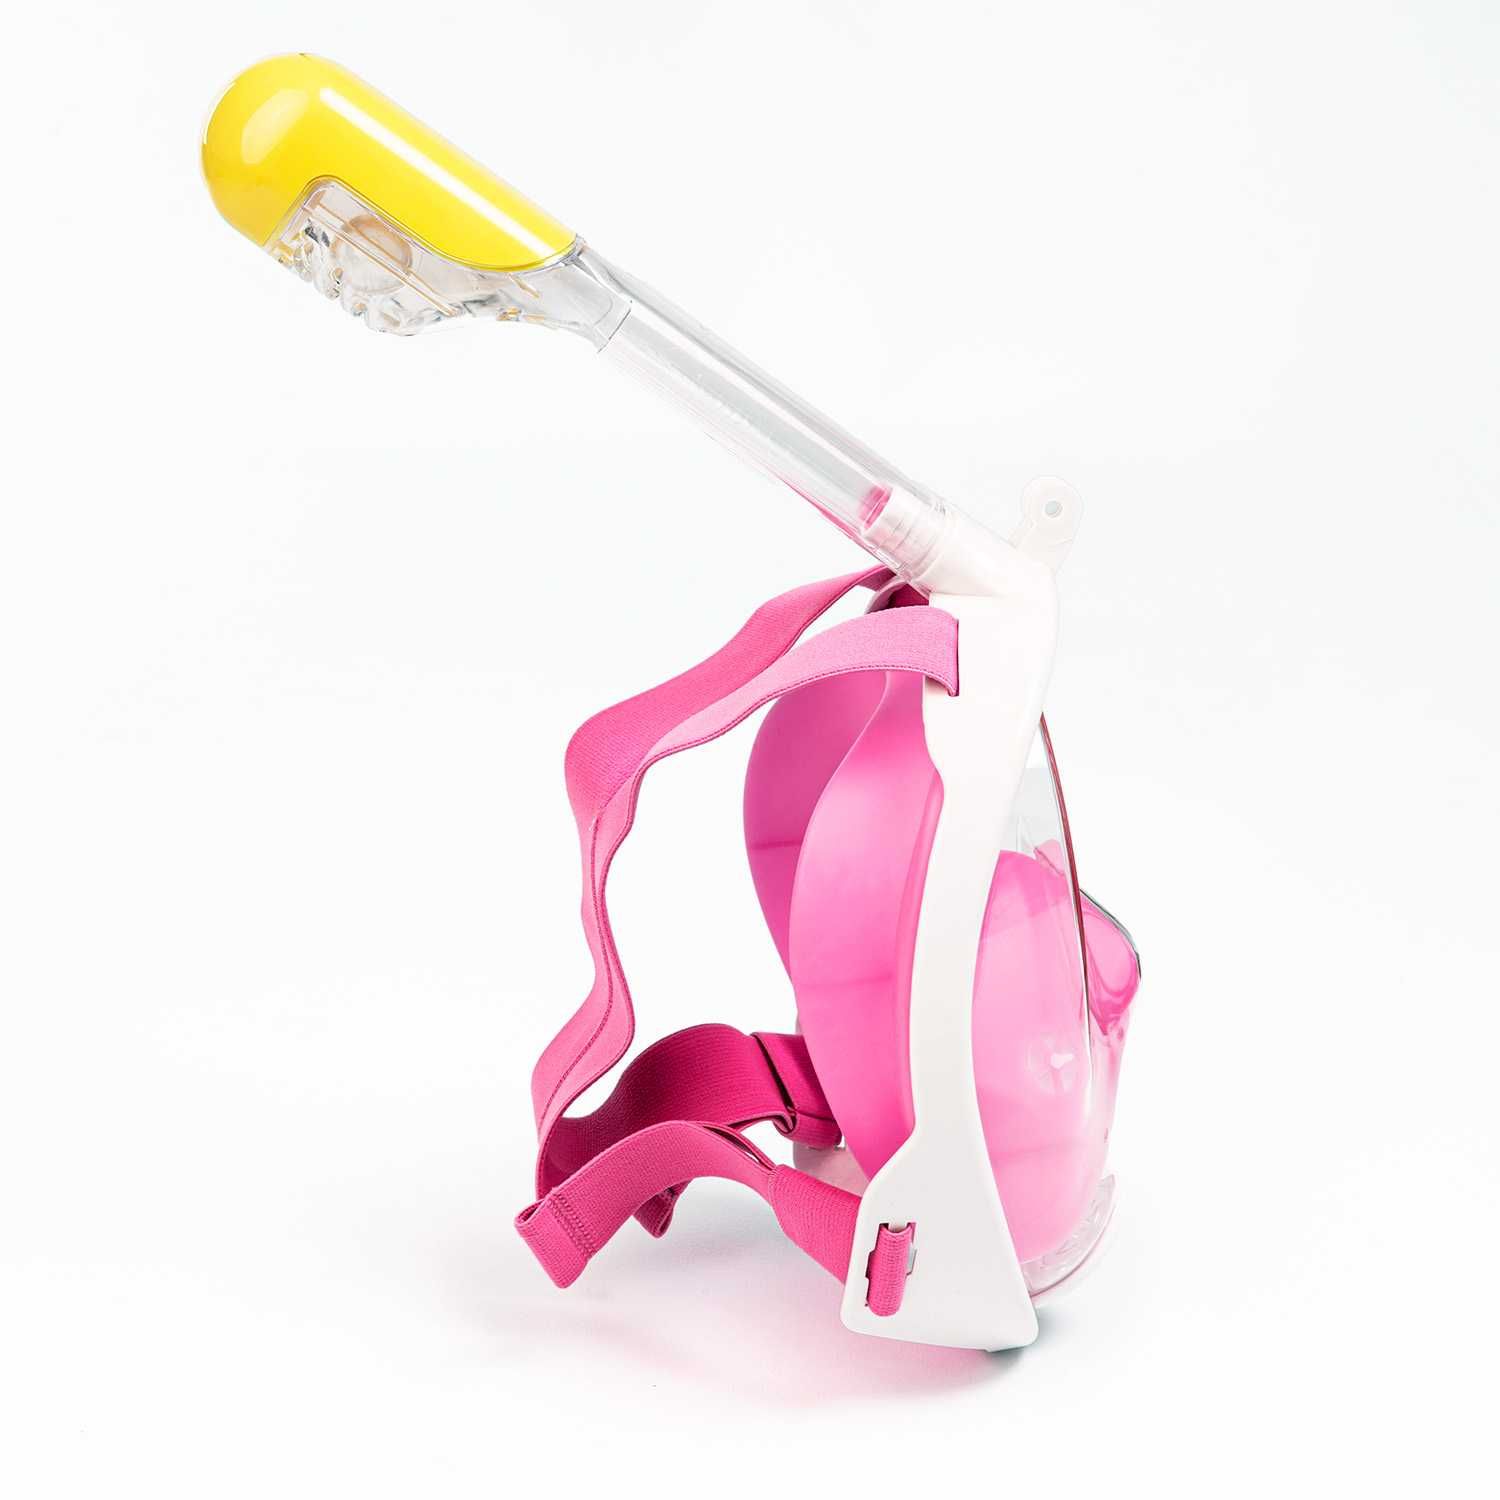 Maska do nurkowania snorkelingu dla dzieci S/M (1 rurka) różowa